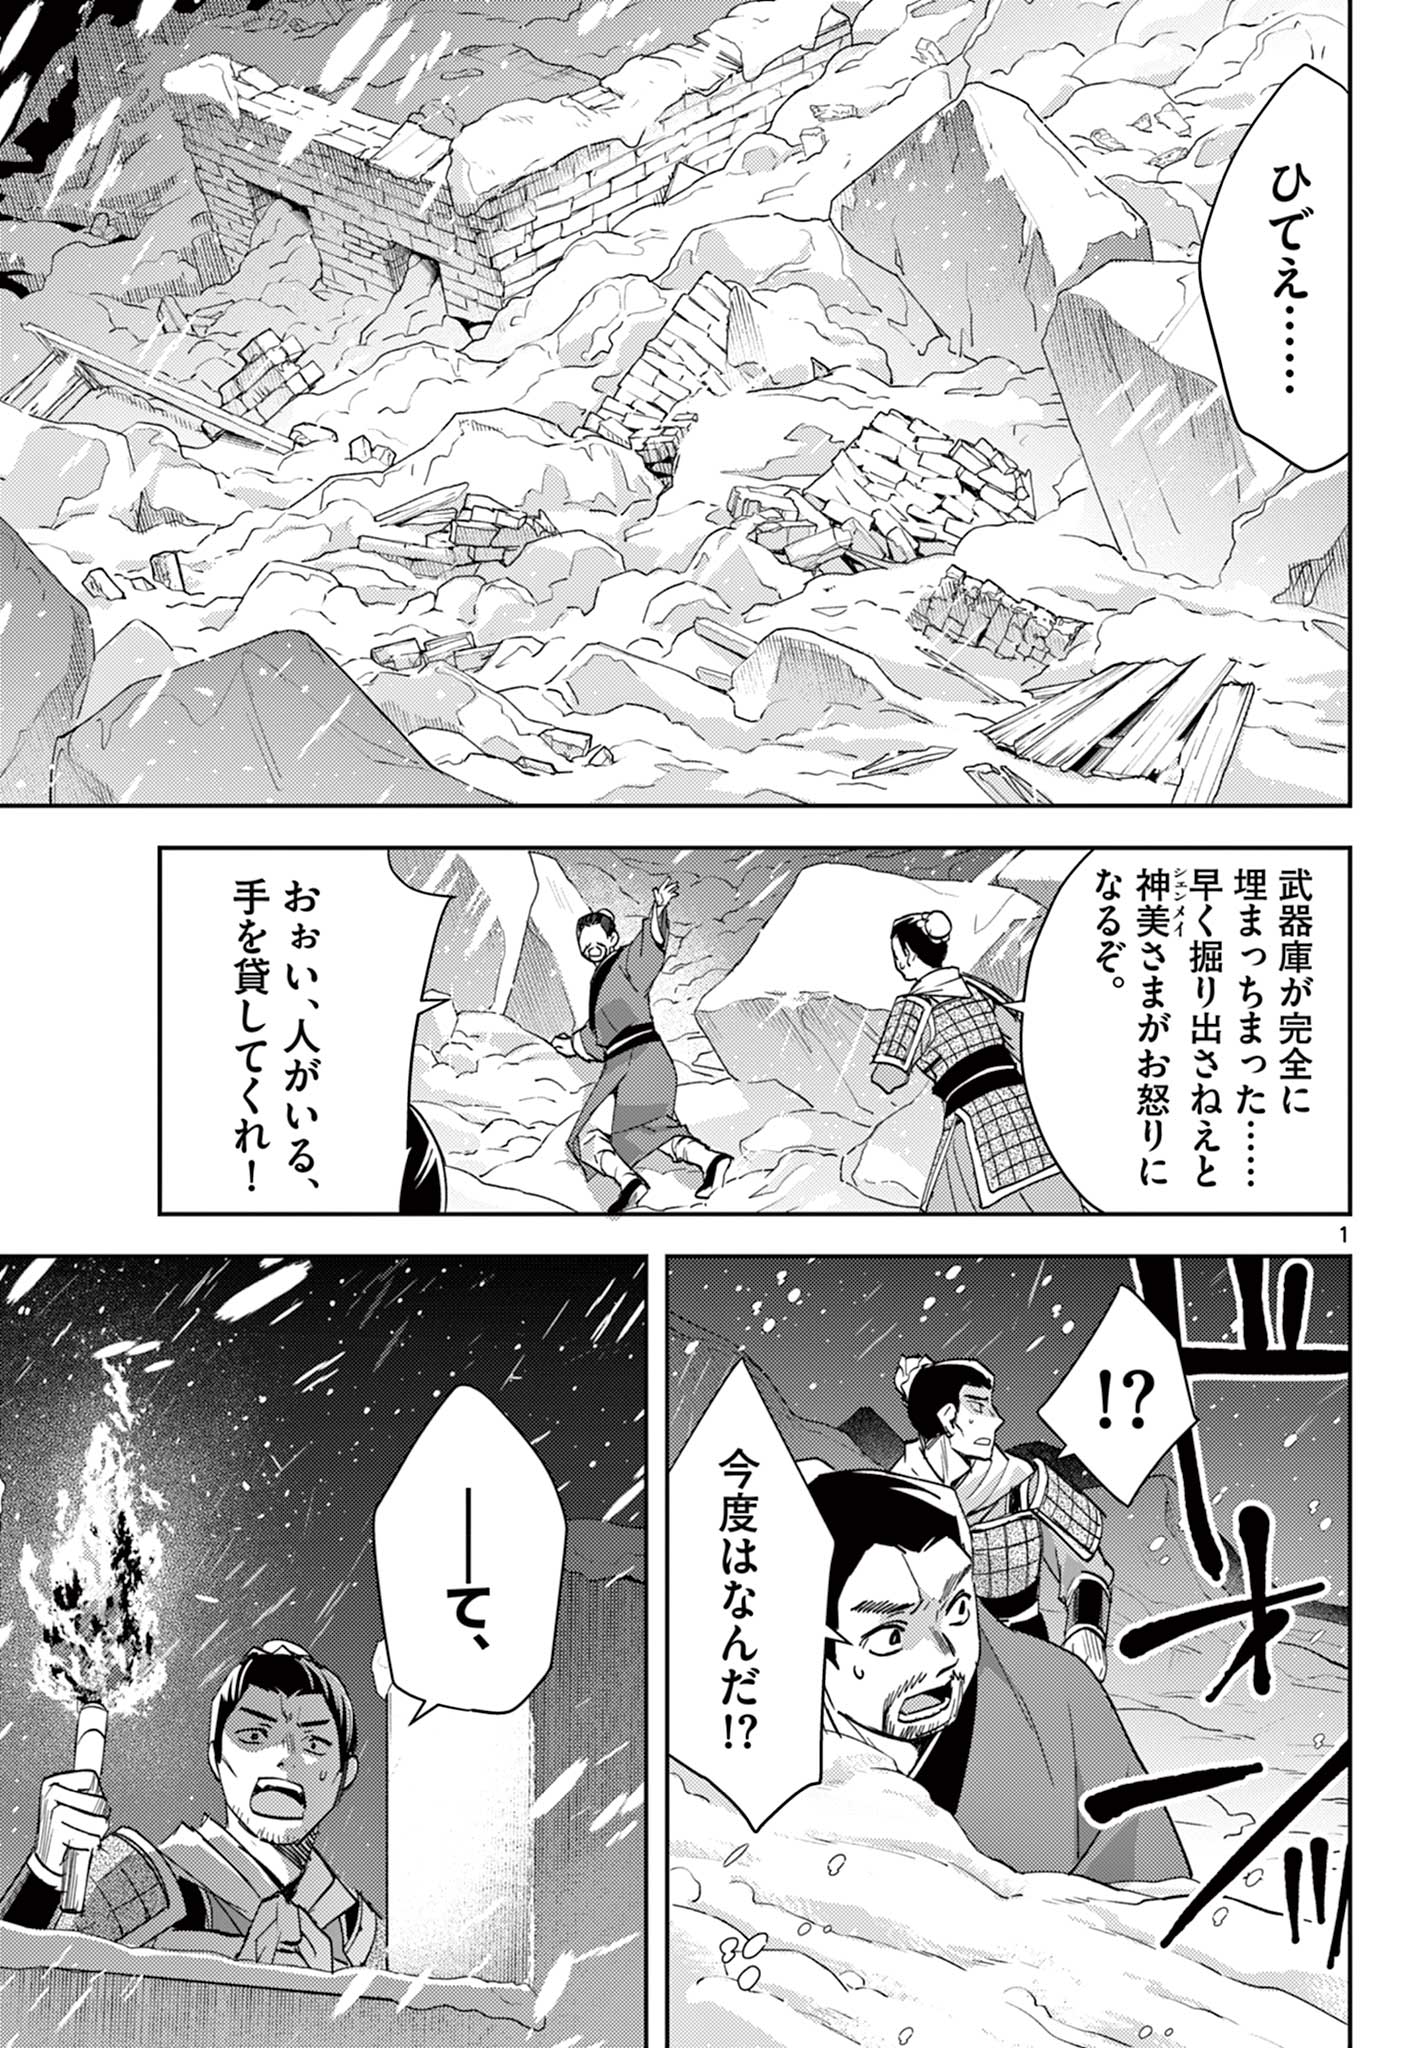 Kusuriya no Hitorigoto – Maomao no Koukyuu Nazotoki Techou - Chapter 76 - Page 1